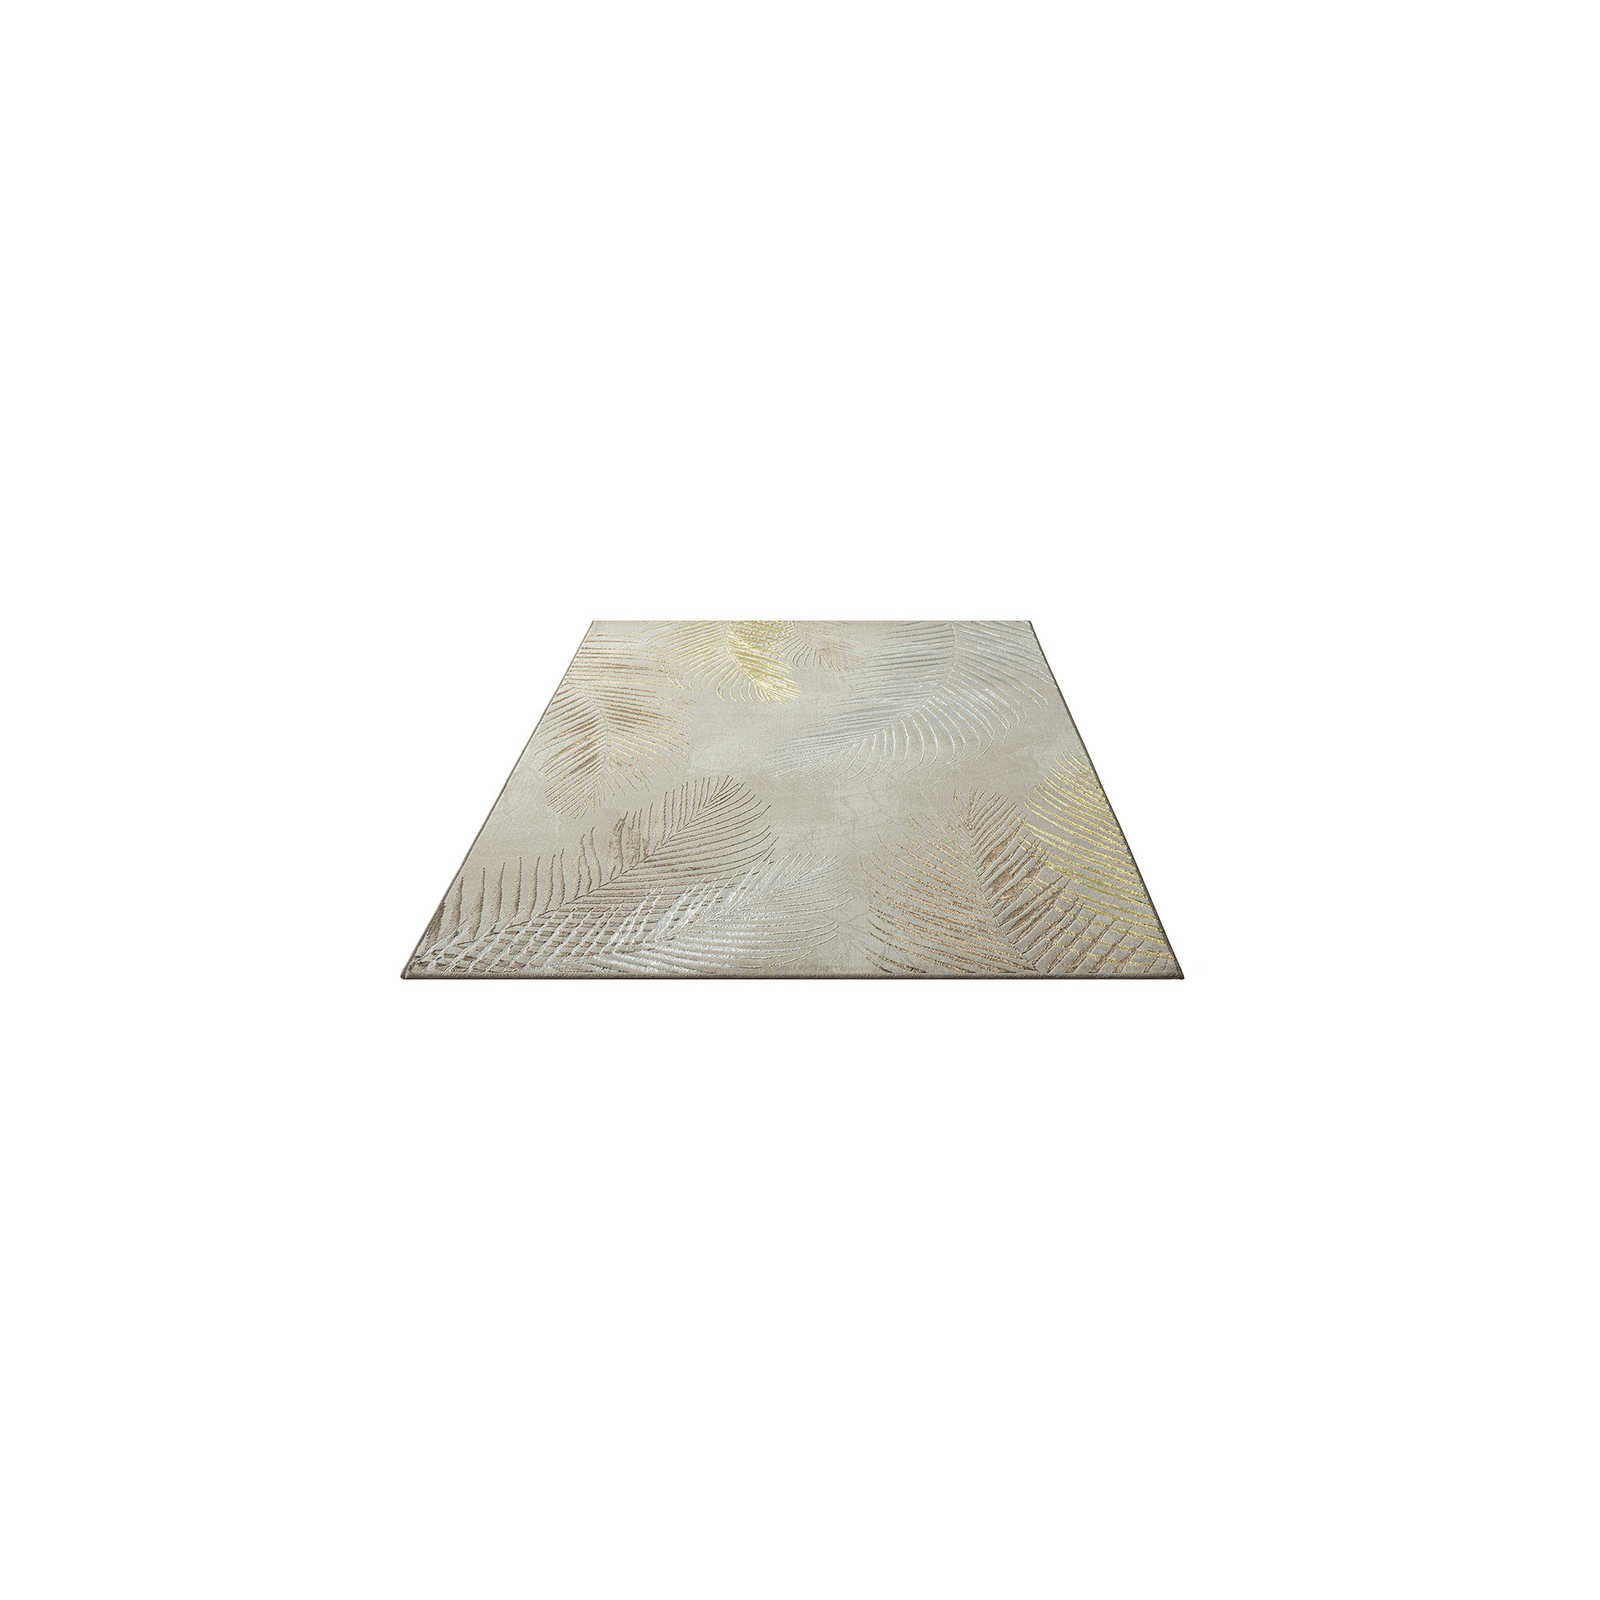 zacht crèmekleurig hoogpolig tapijt - 170 x 120 cm
